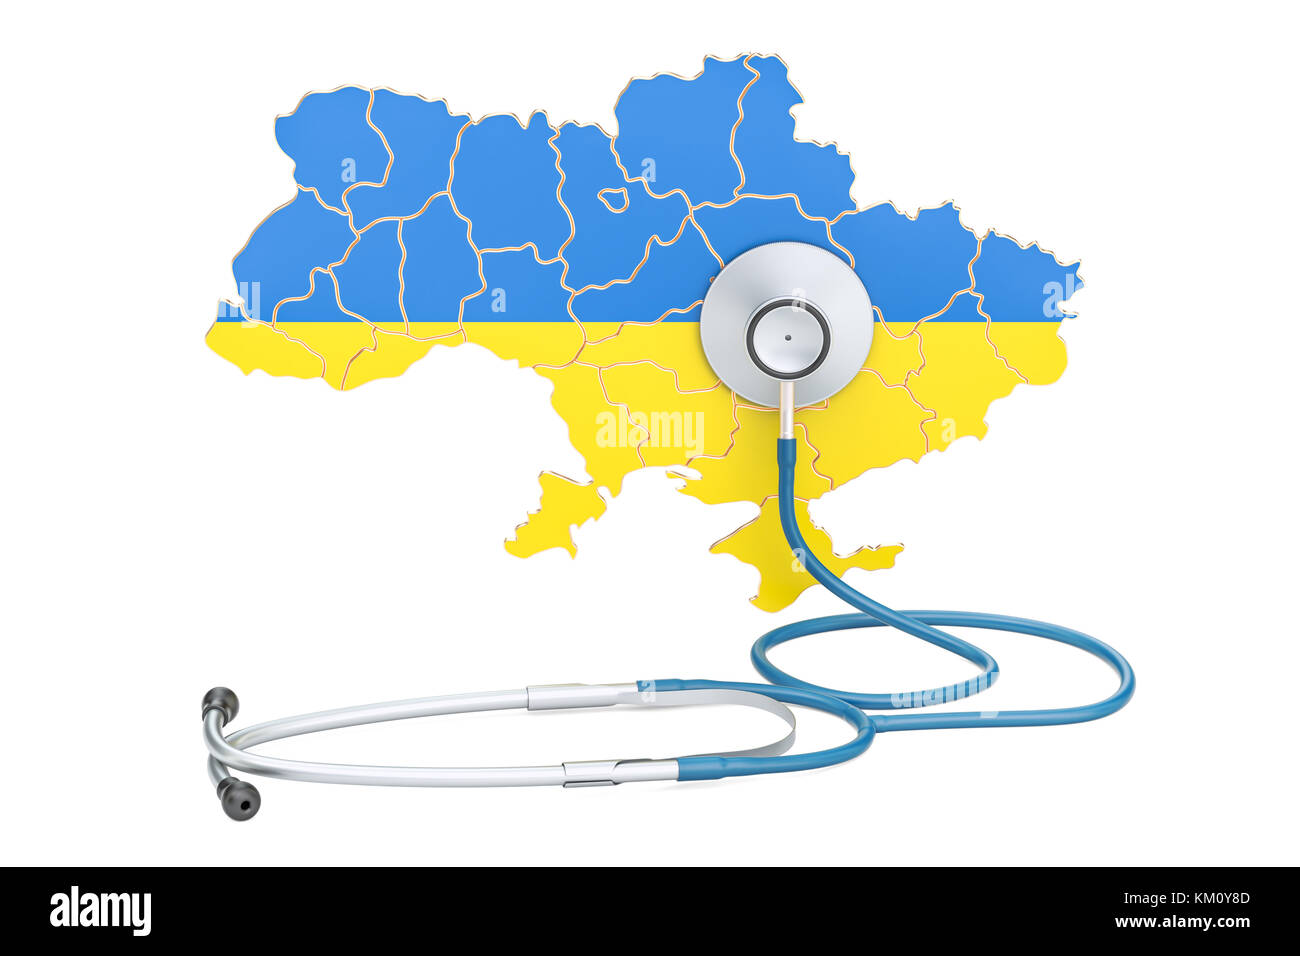 Ukrainische Karte mit Stethoskop, national Health Care Concept, 3D-Rendering Stockfoto